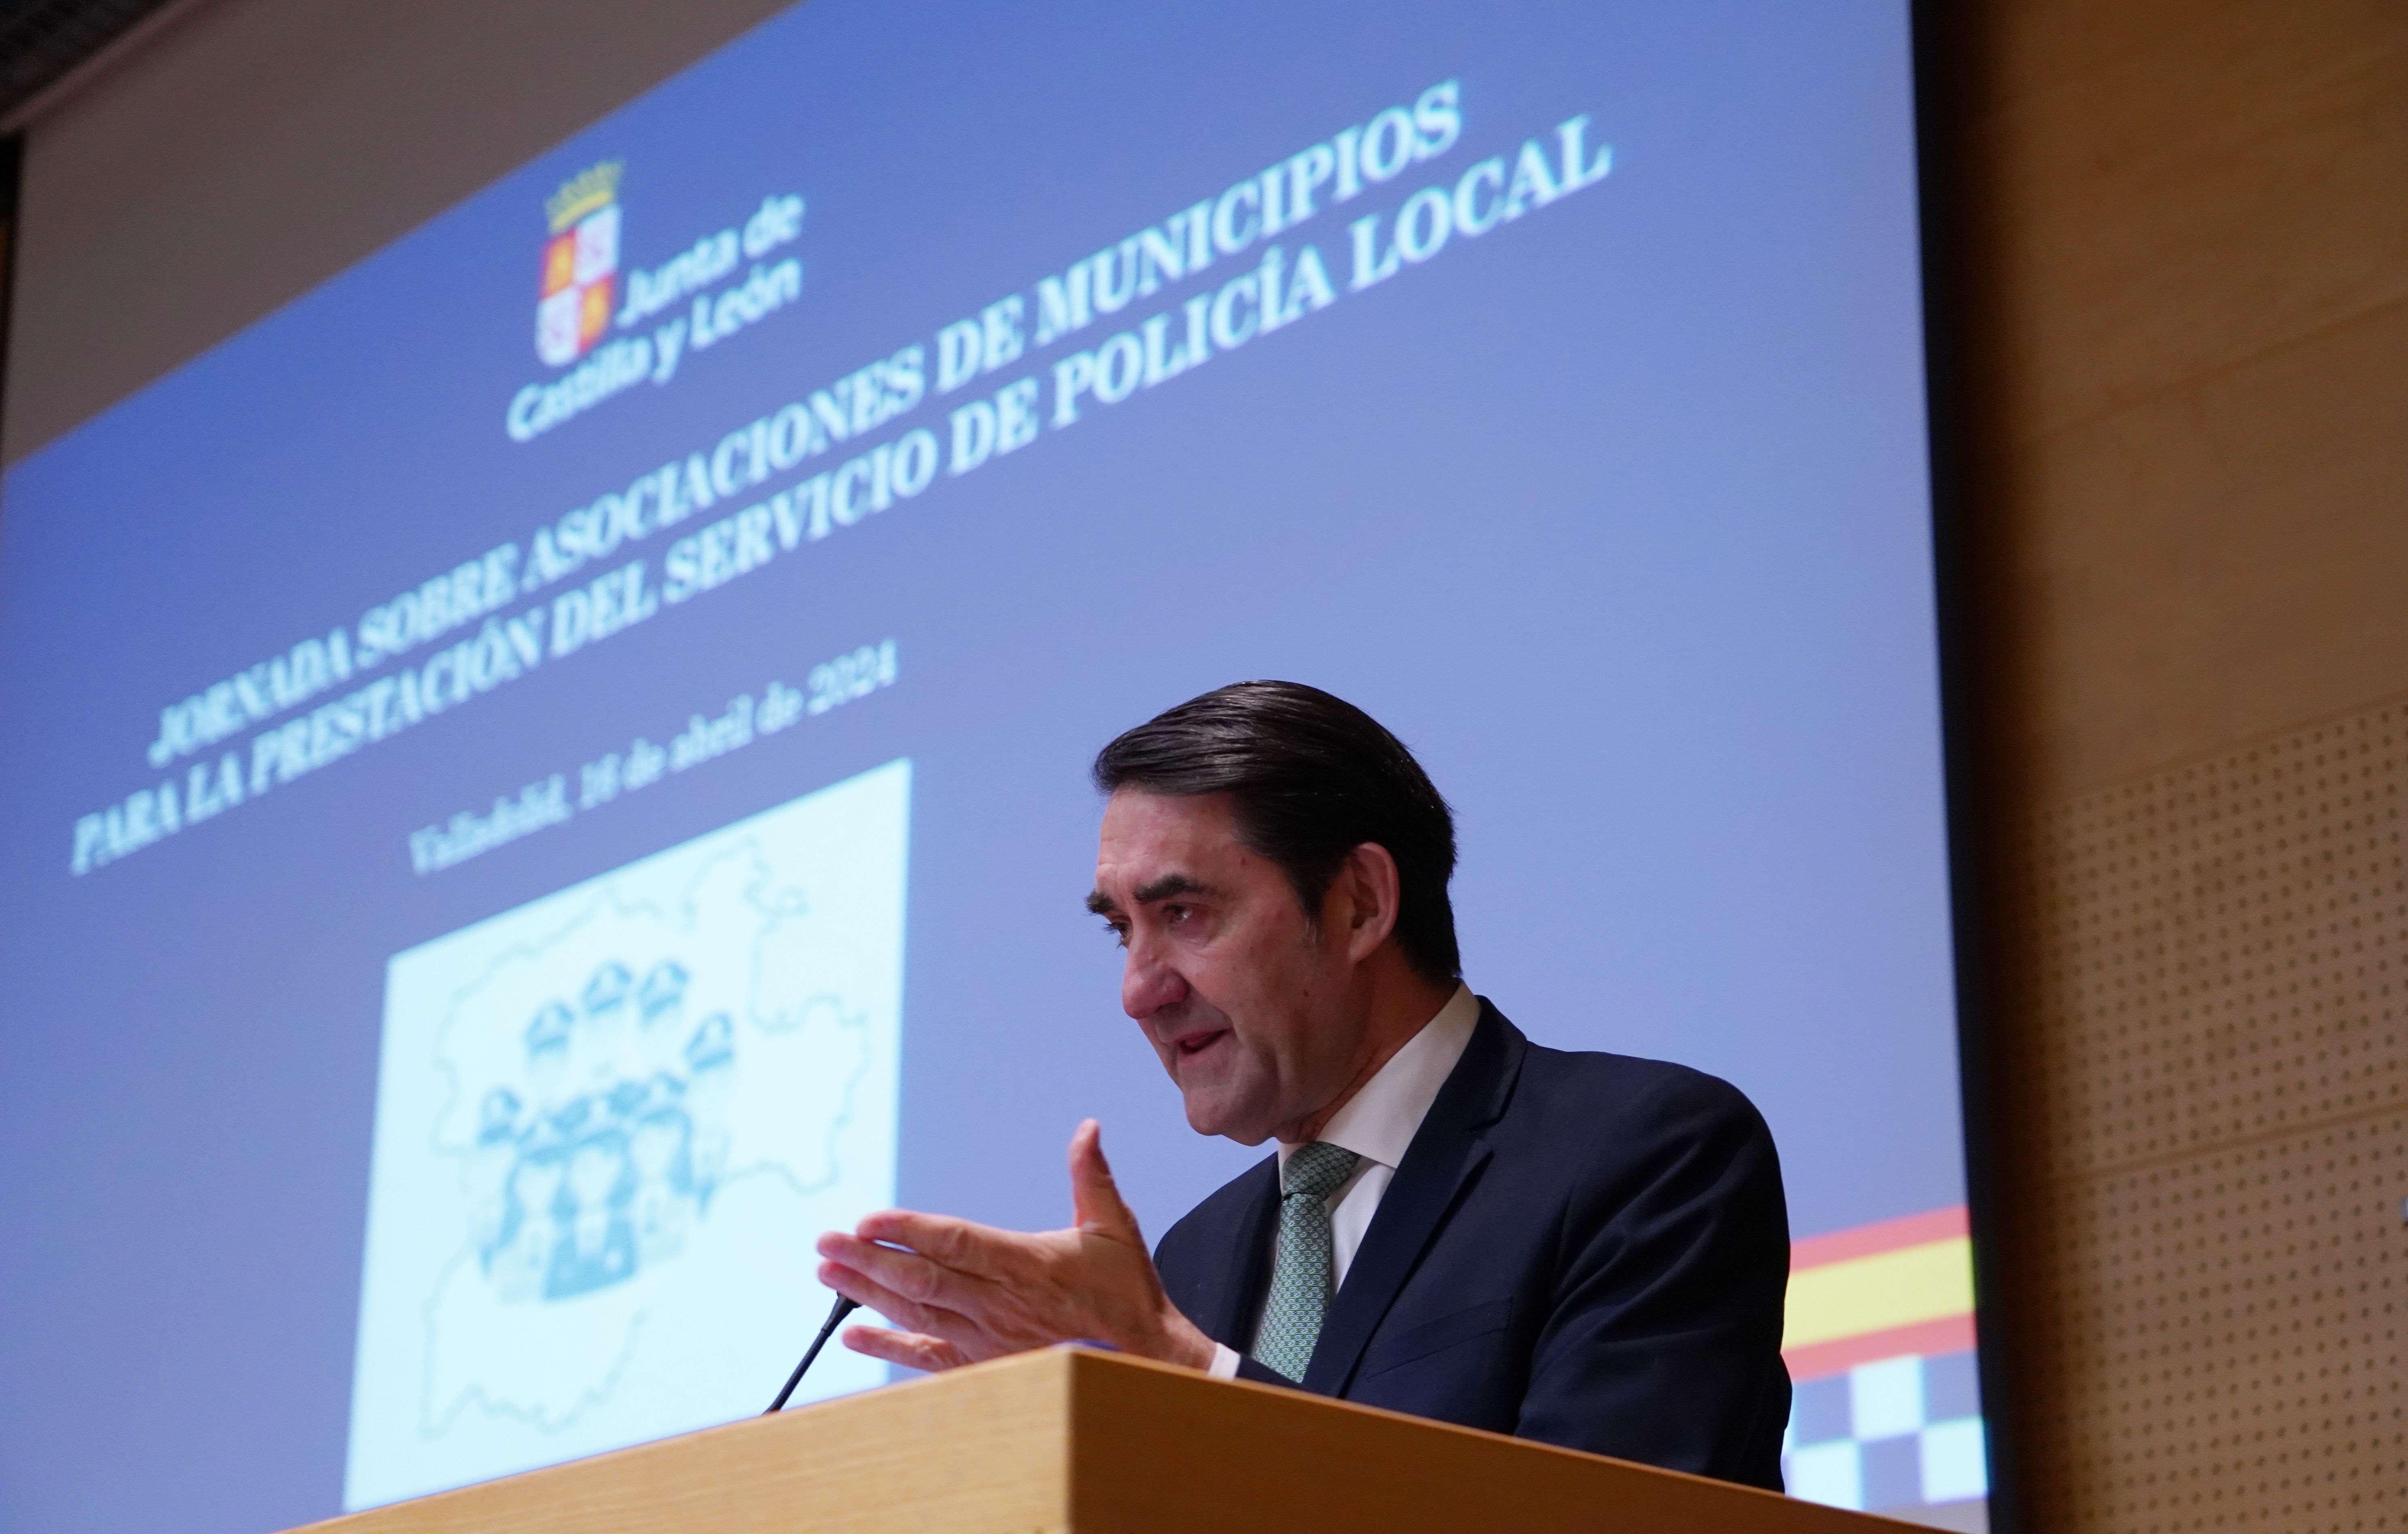  Juan Carlos Suárez-Quiñones durante un acto en Valladolid este martes. | ICAL